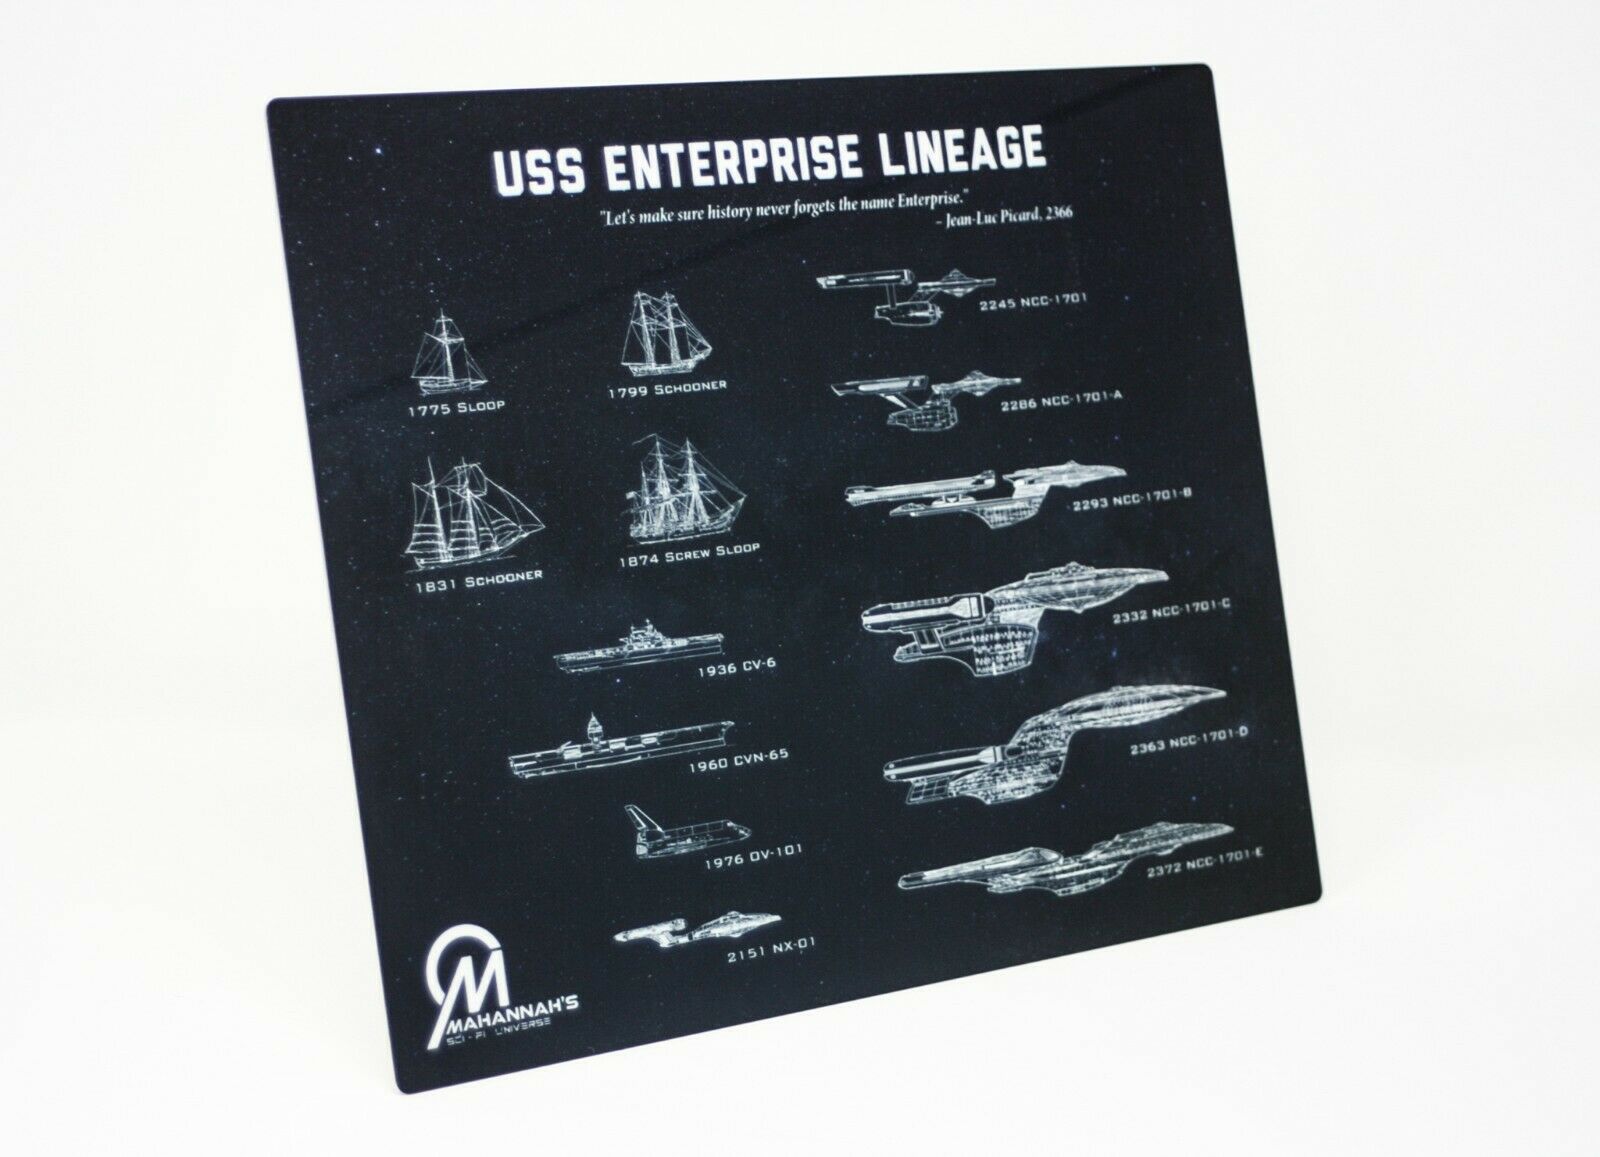 Star Trek USS Enterprise Lineage Dye Sublimation Blueprint Plaque